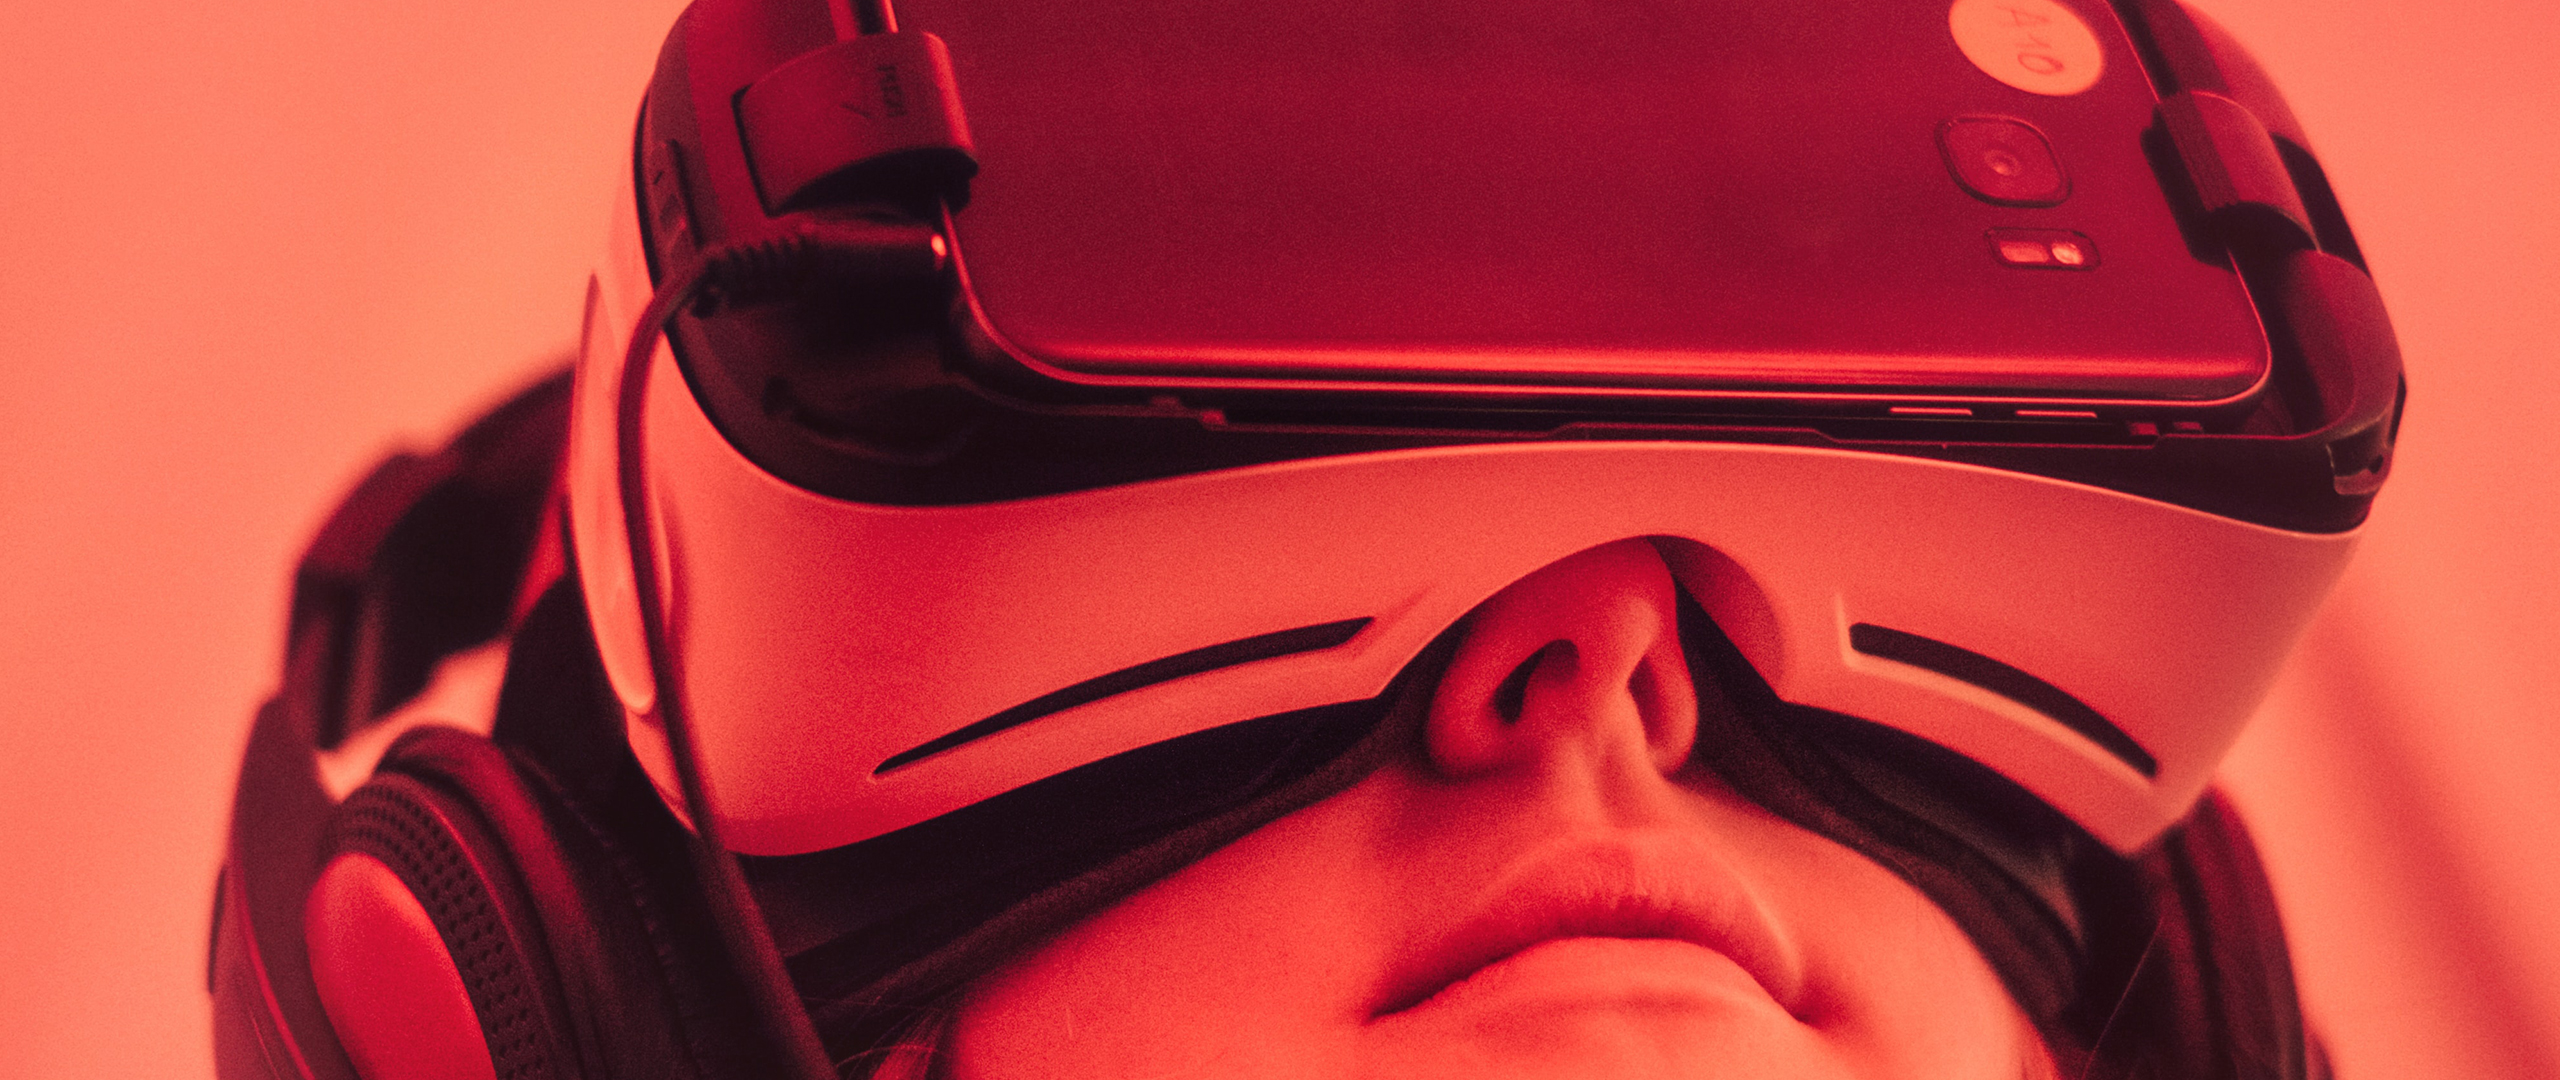 Een vrouw die een VR bril draagt die gekoppeld is aan een mobiele telefoon